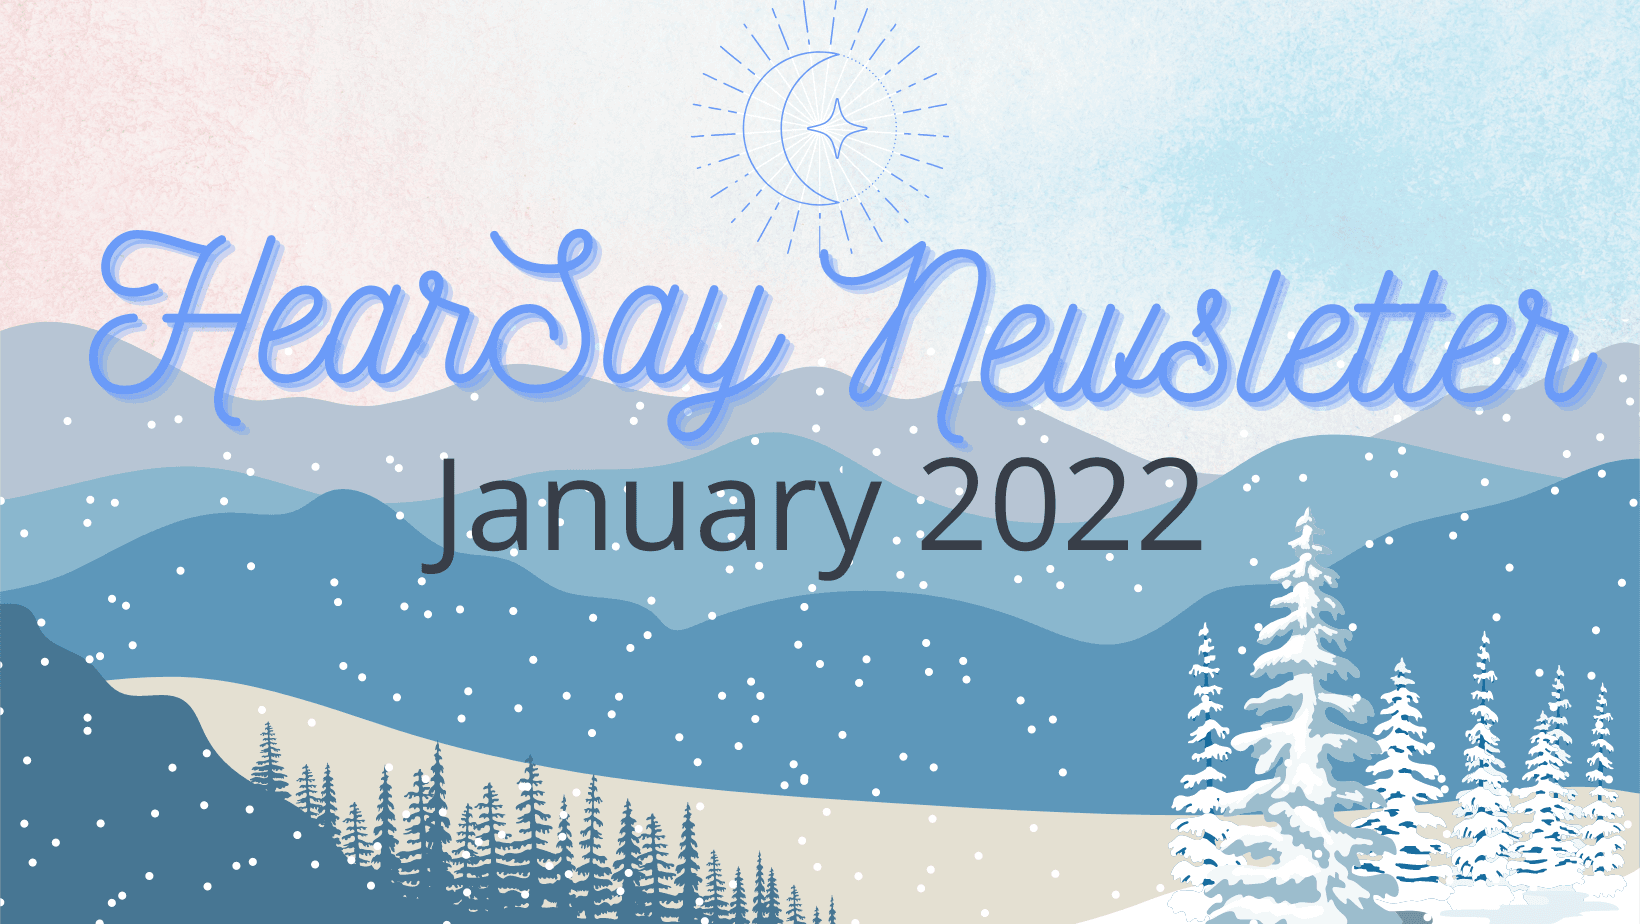 HearSay January 2022